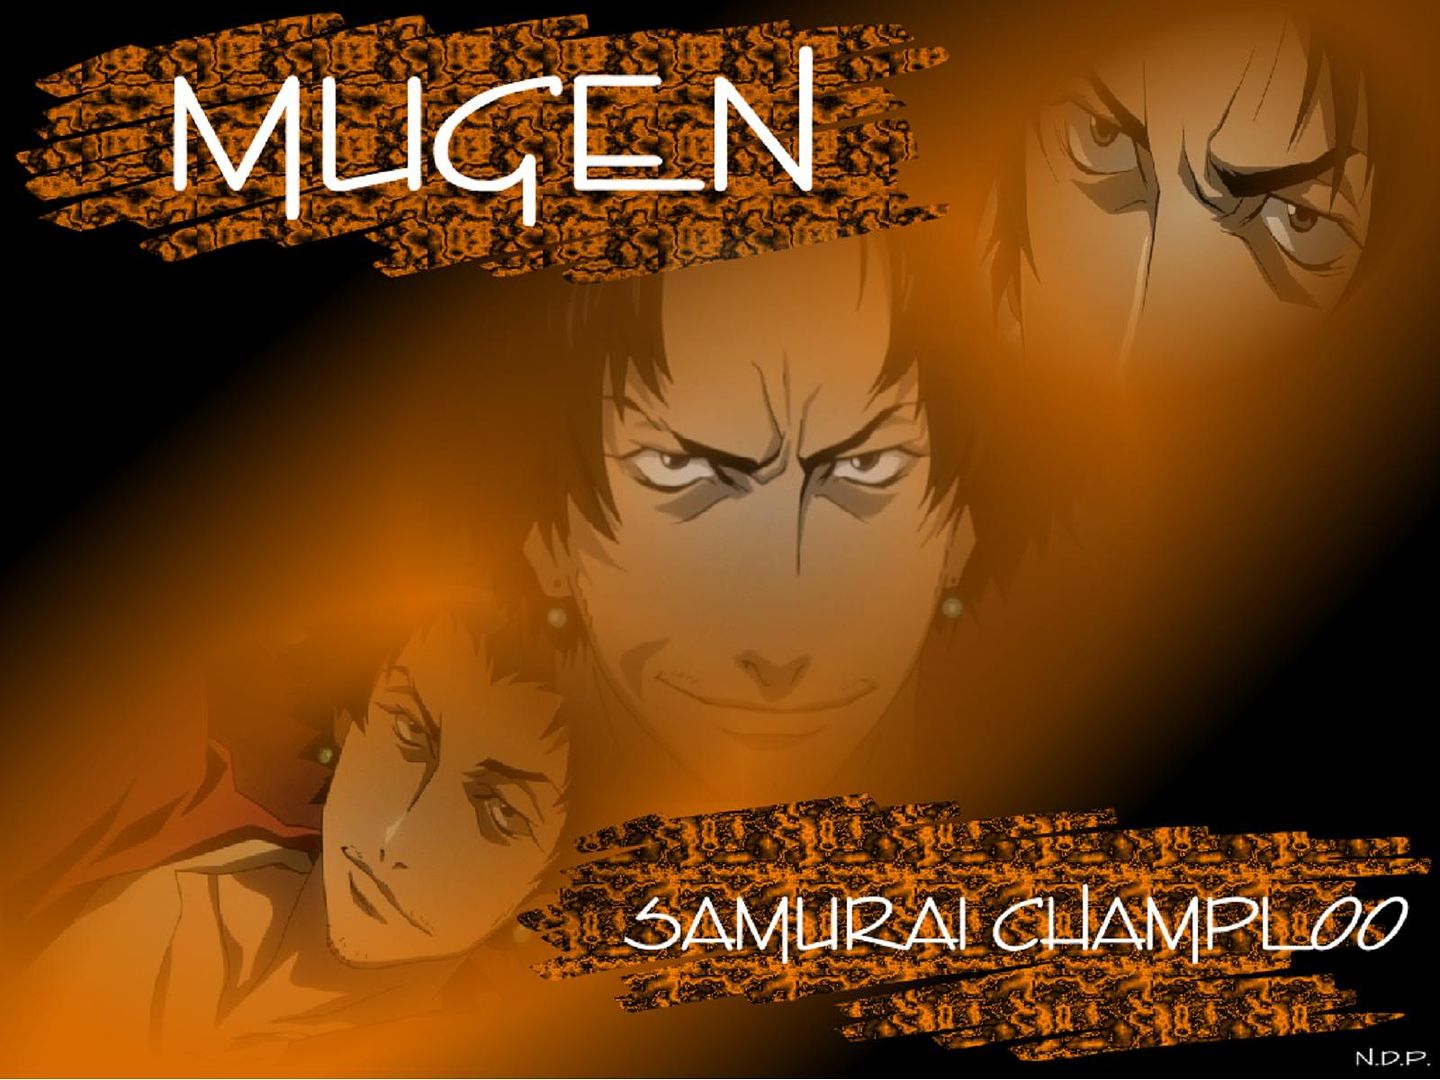 Mugen+samurai+champloo+wallpaper